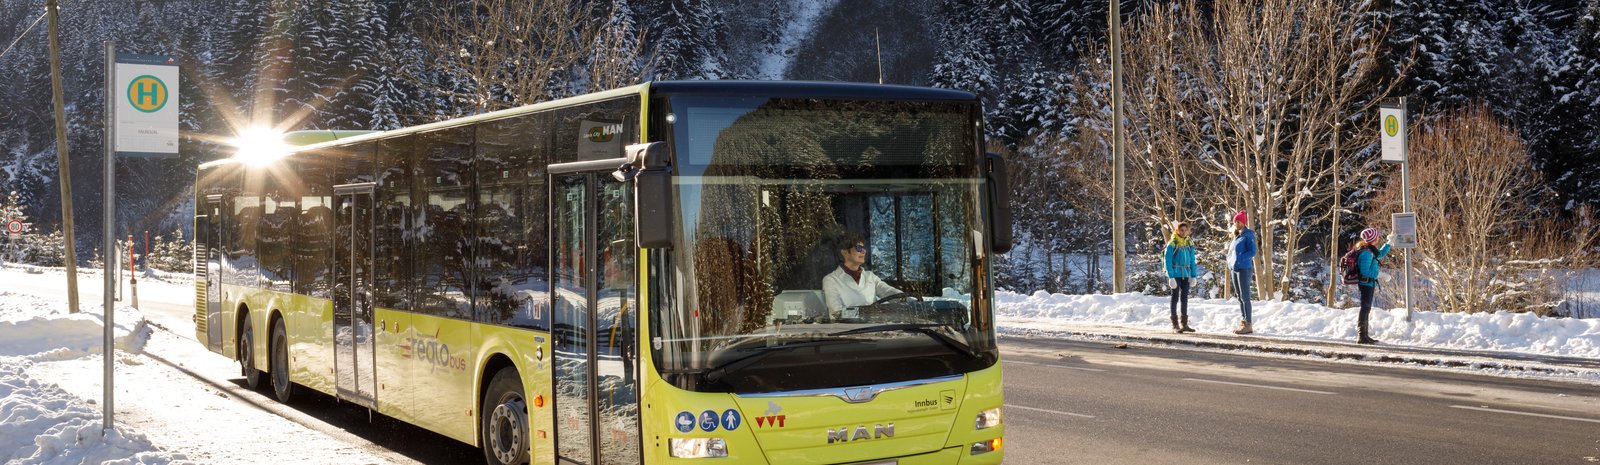 Ski bus | © TirolWerbung Robert Pupeter